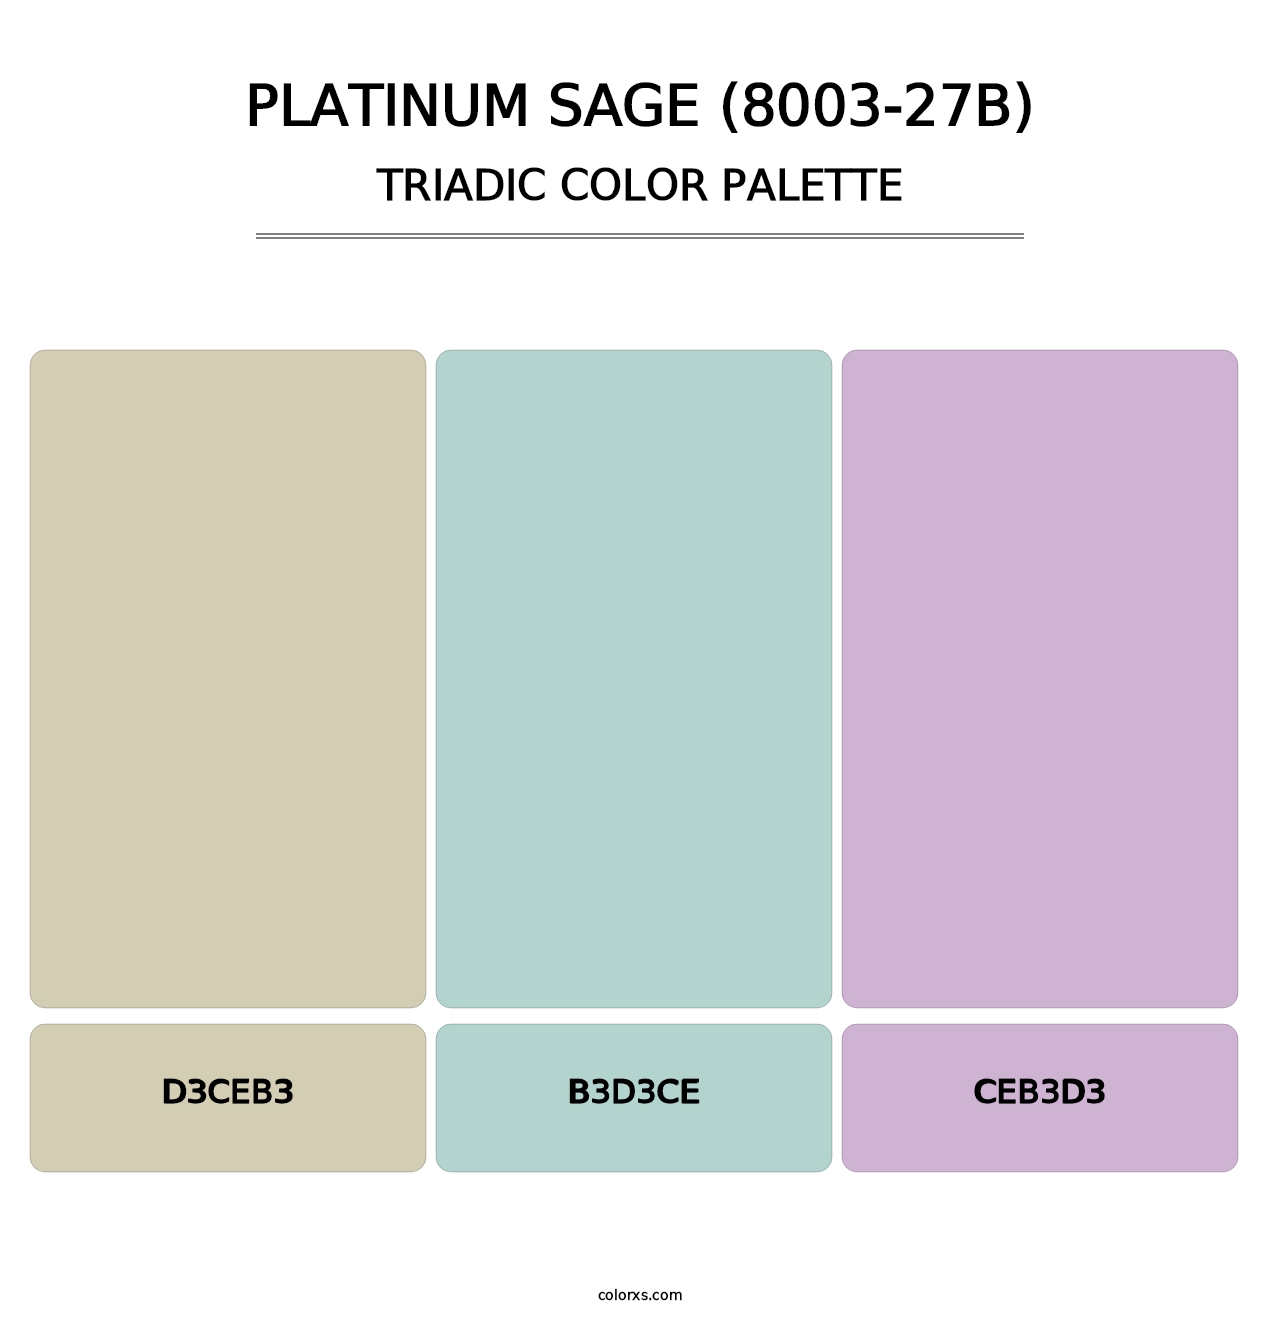 Platinum Sage (8003-27B) - Triadic Color Palette